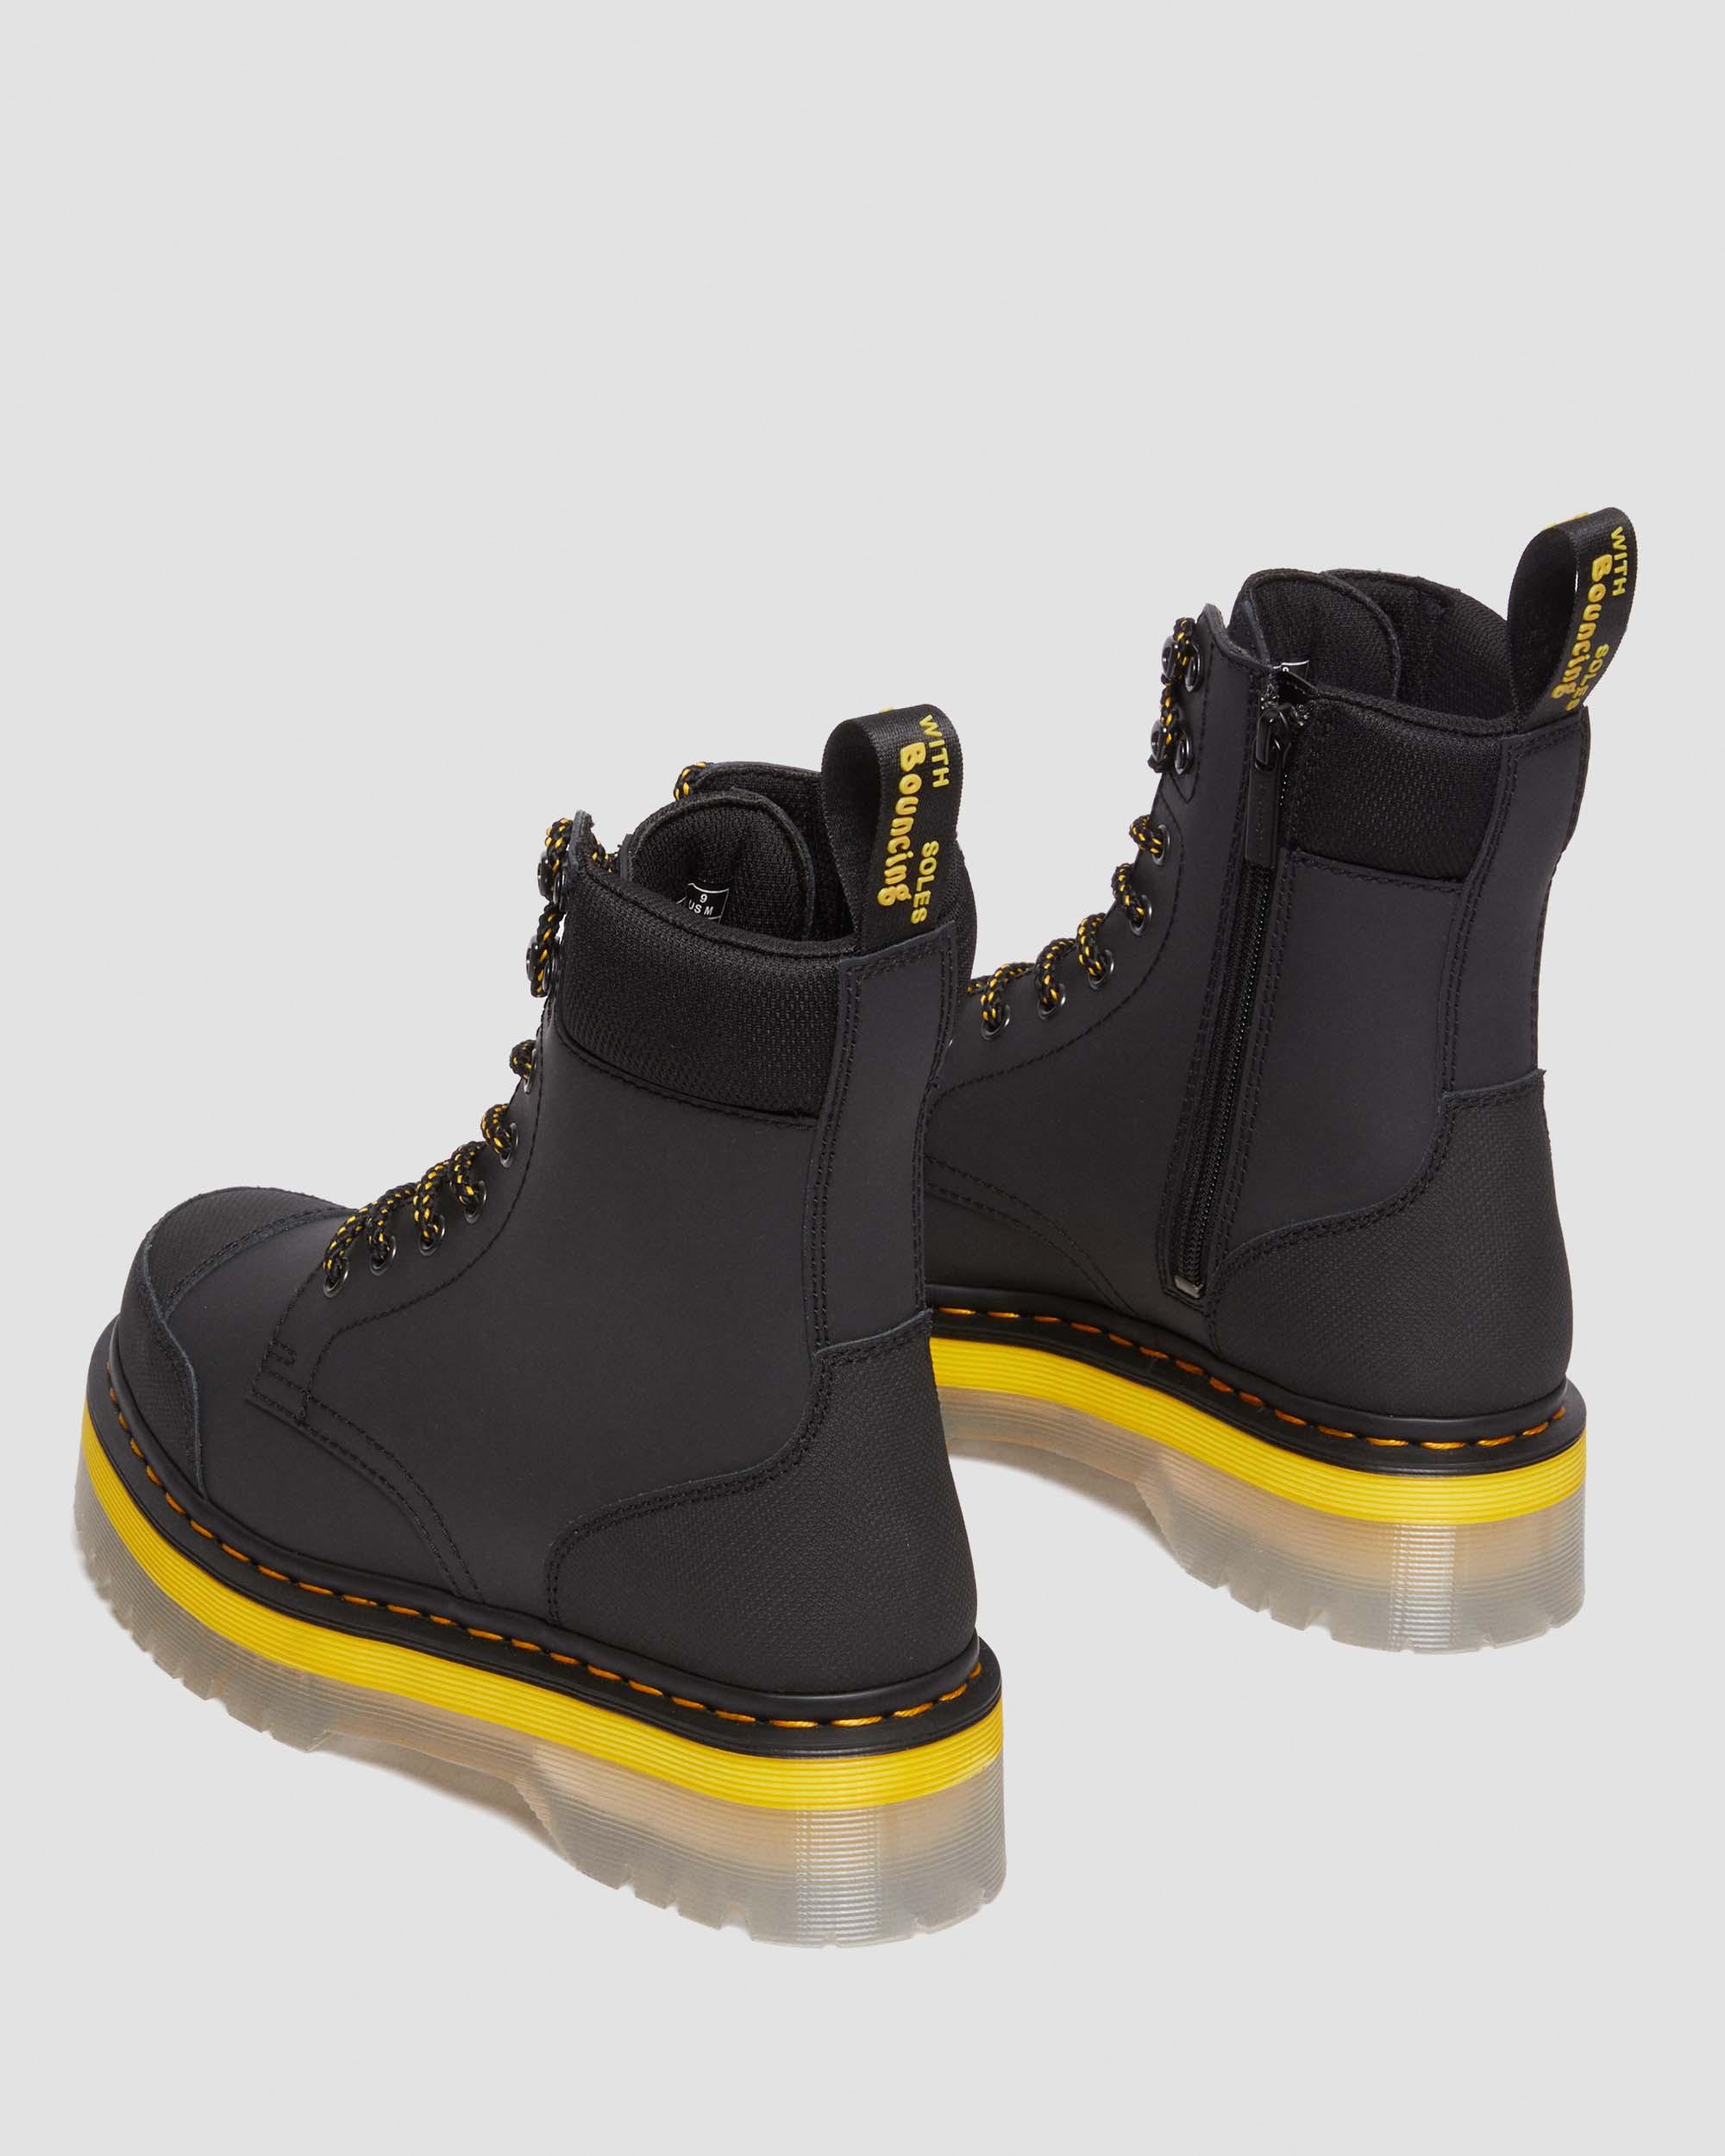 Jadon Tech Platform Boots in Black | Dr. Martens